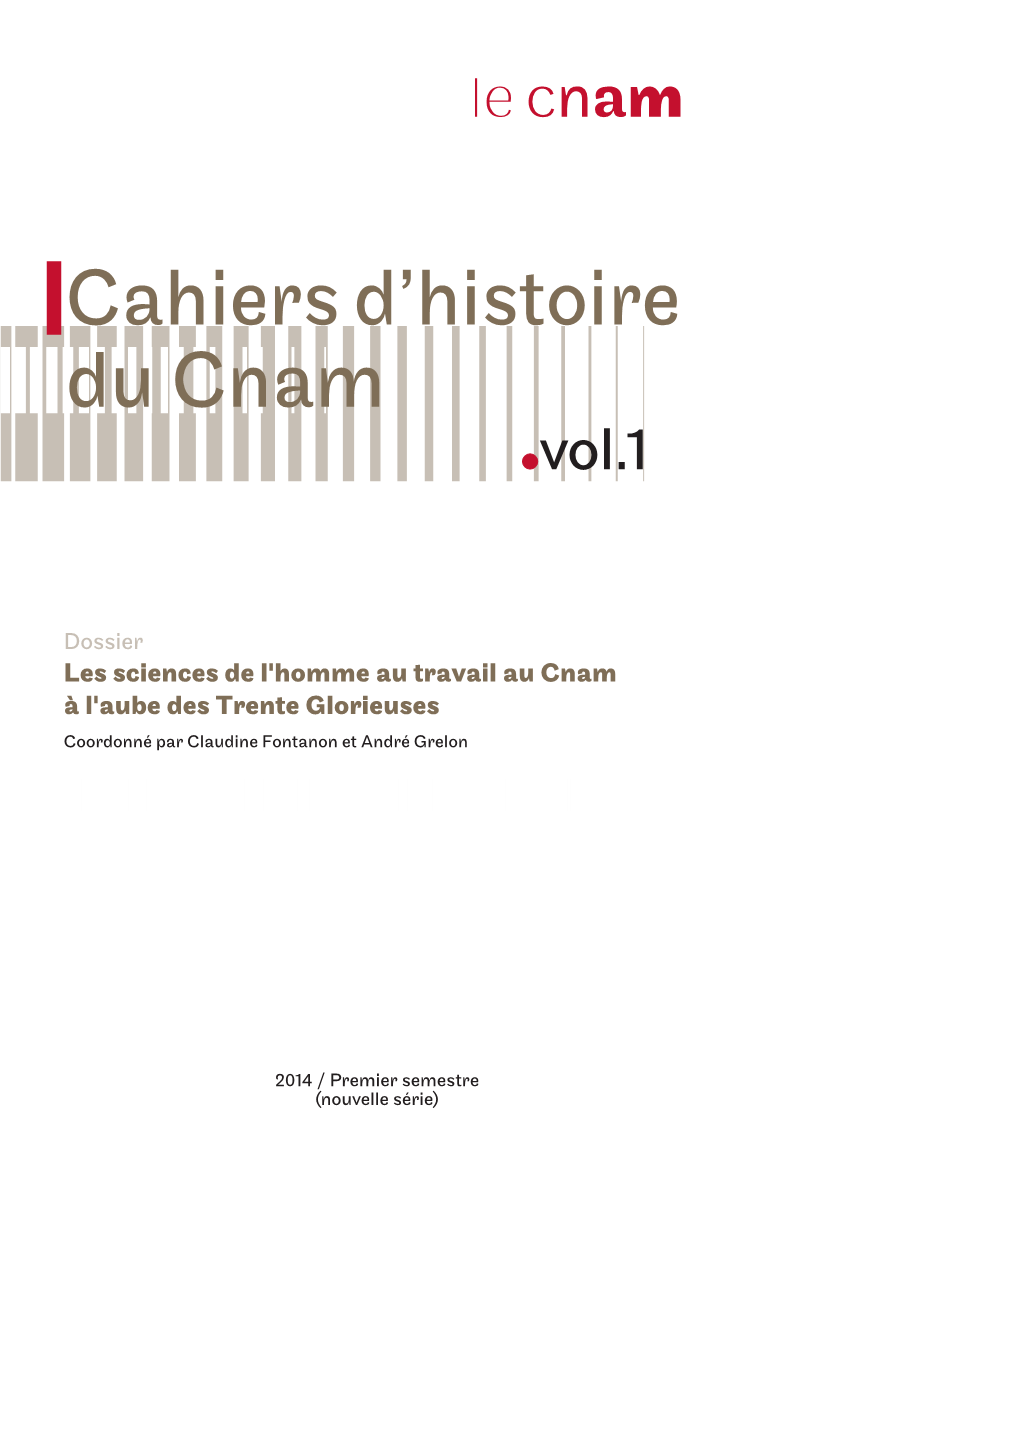 Cahiers D'histoire Du Cnam